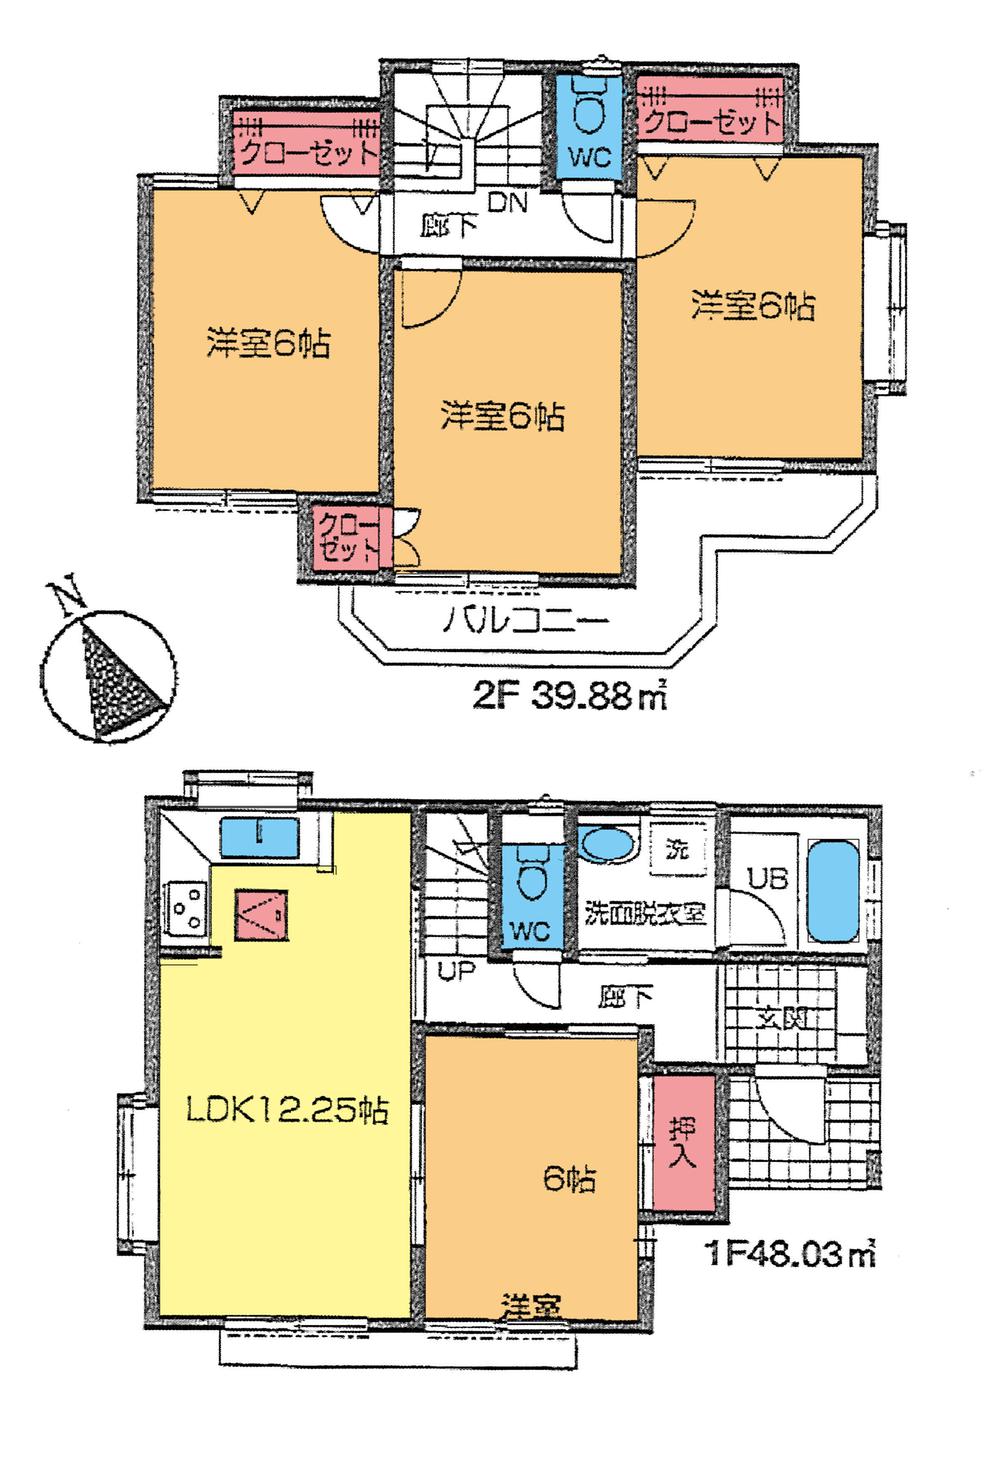 Floor plan. 21,800,000 yen, 4LDK, Land area 145.72 sq m , Building area 87.9 sq m floor plan